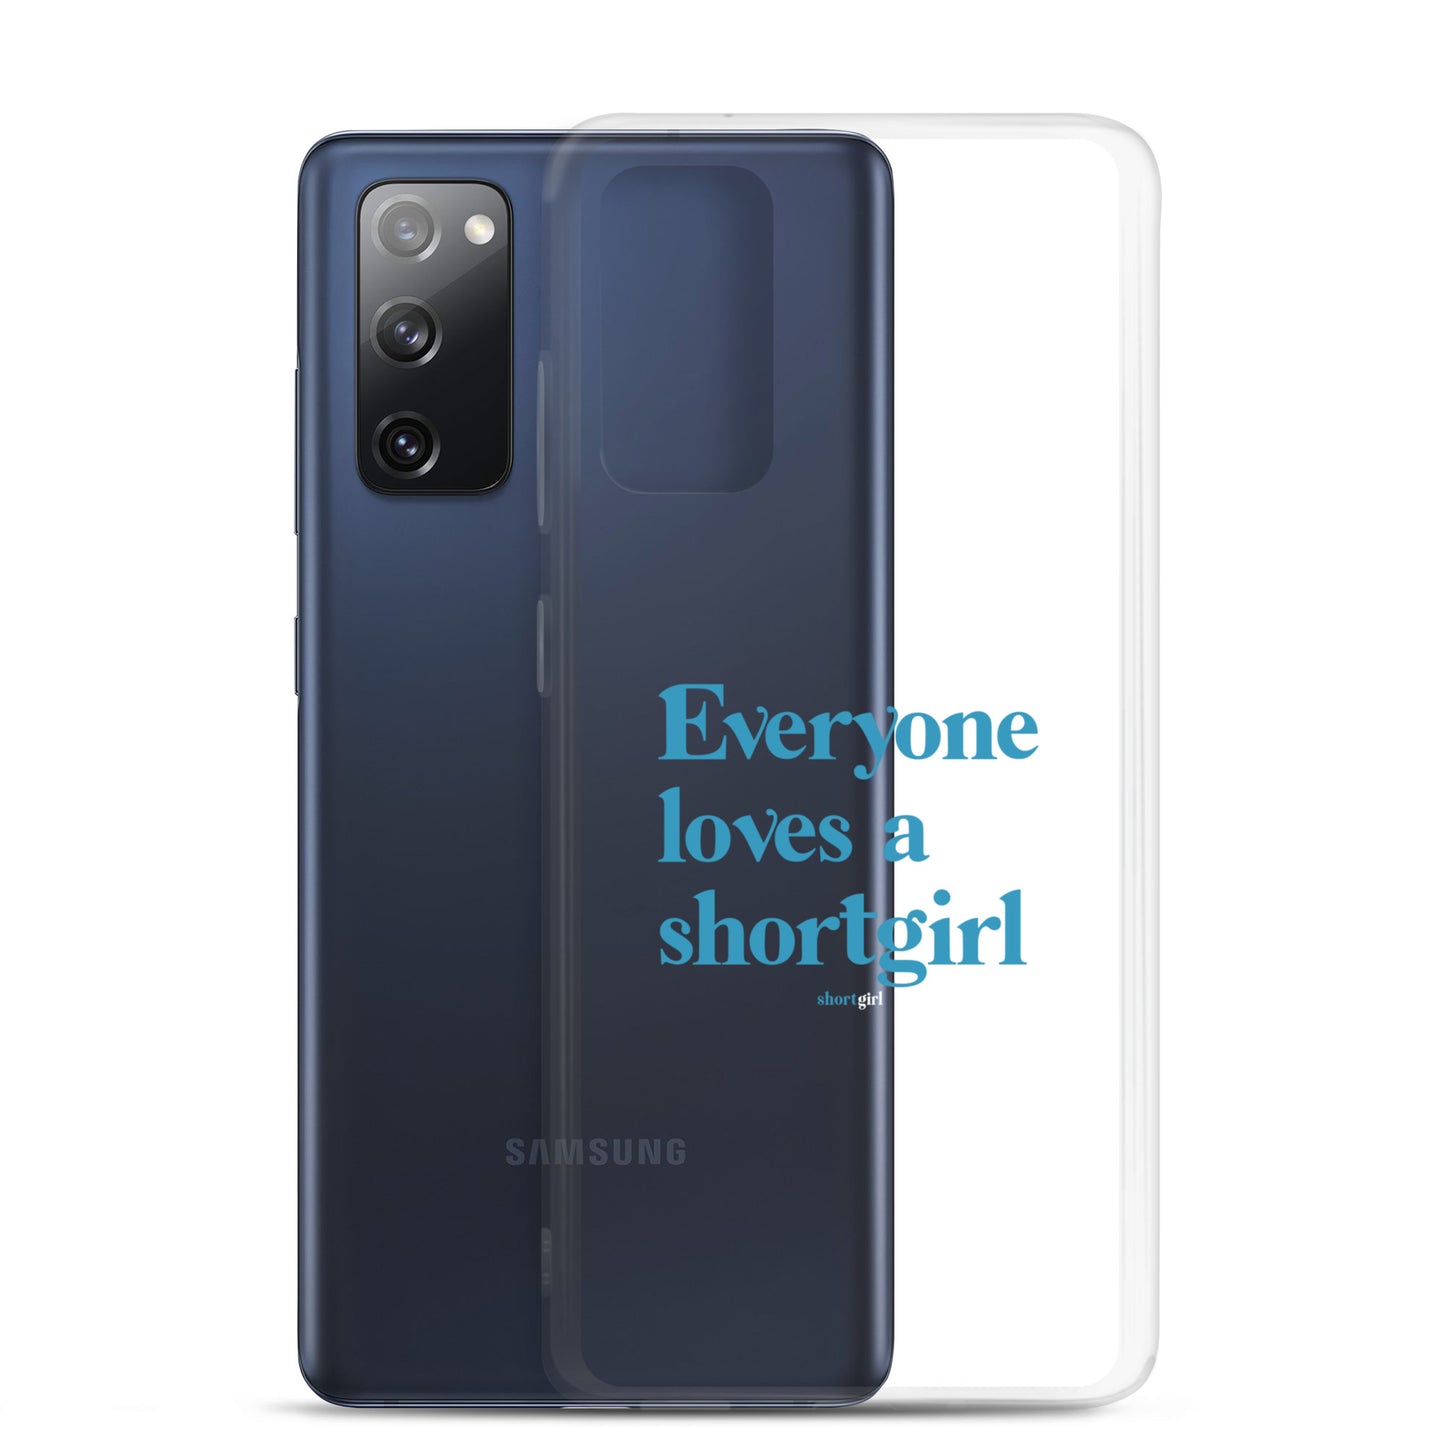 Samsung Case - Everyone loves a shortgirl